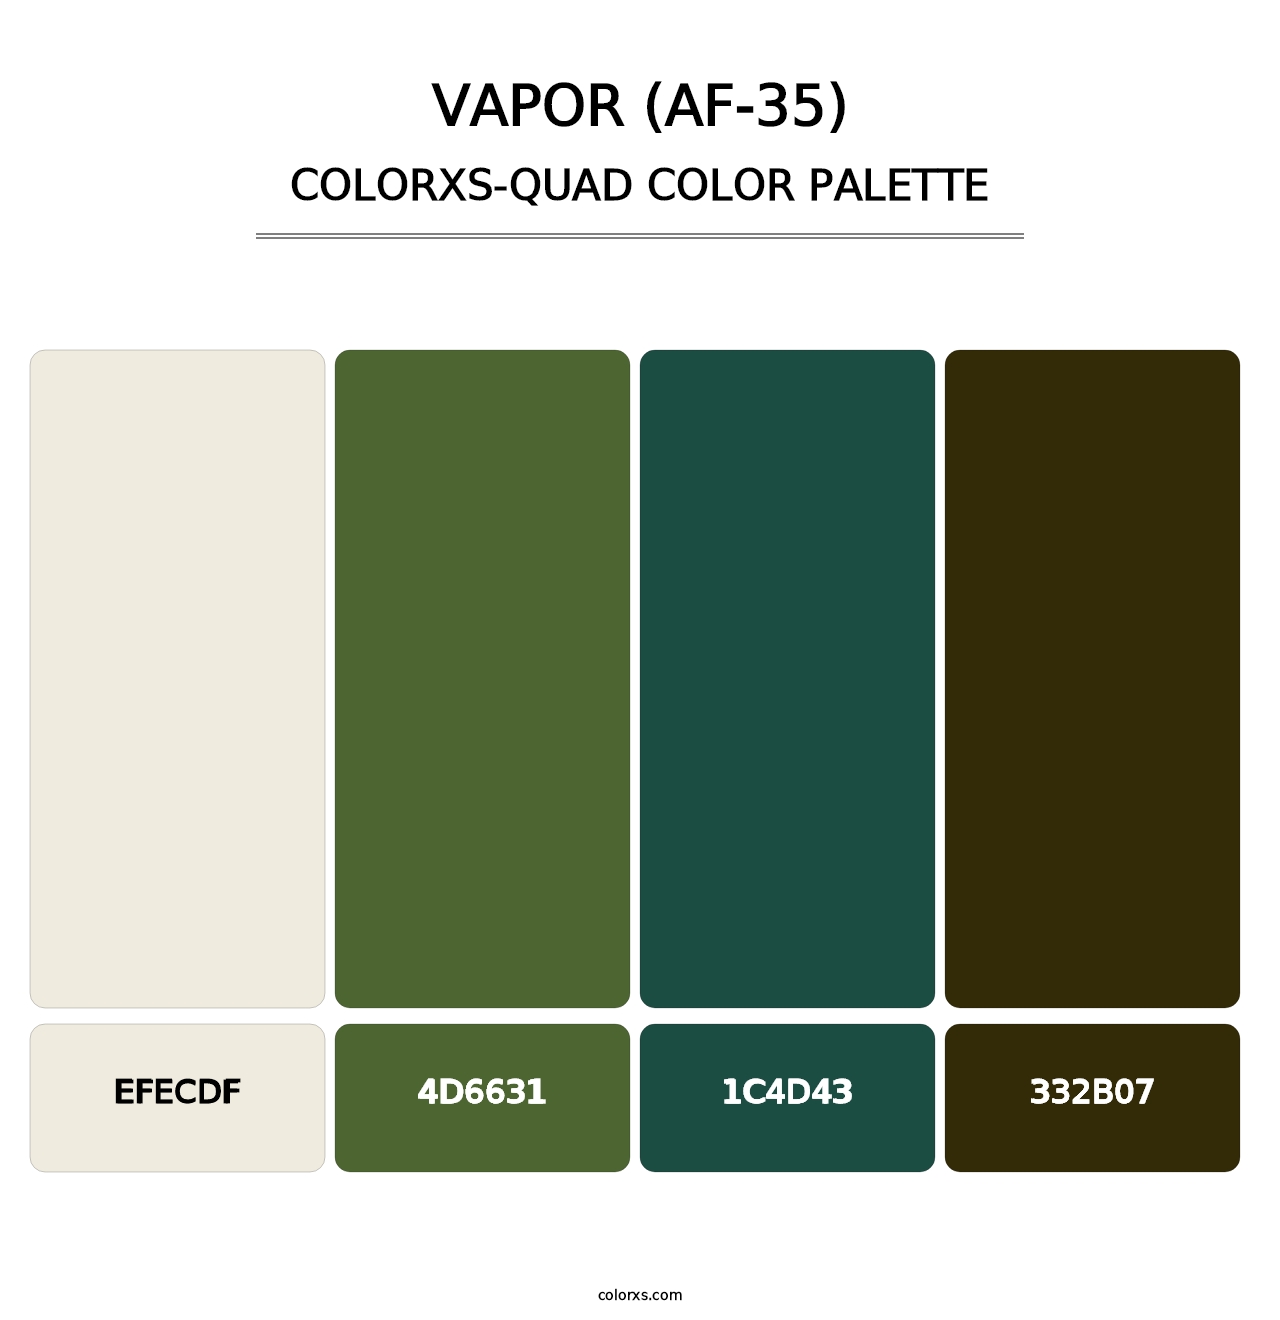 Vapor (AF-35) - Colorxs Quad Palette